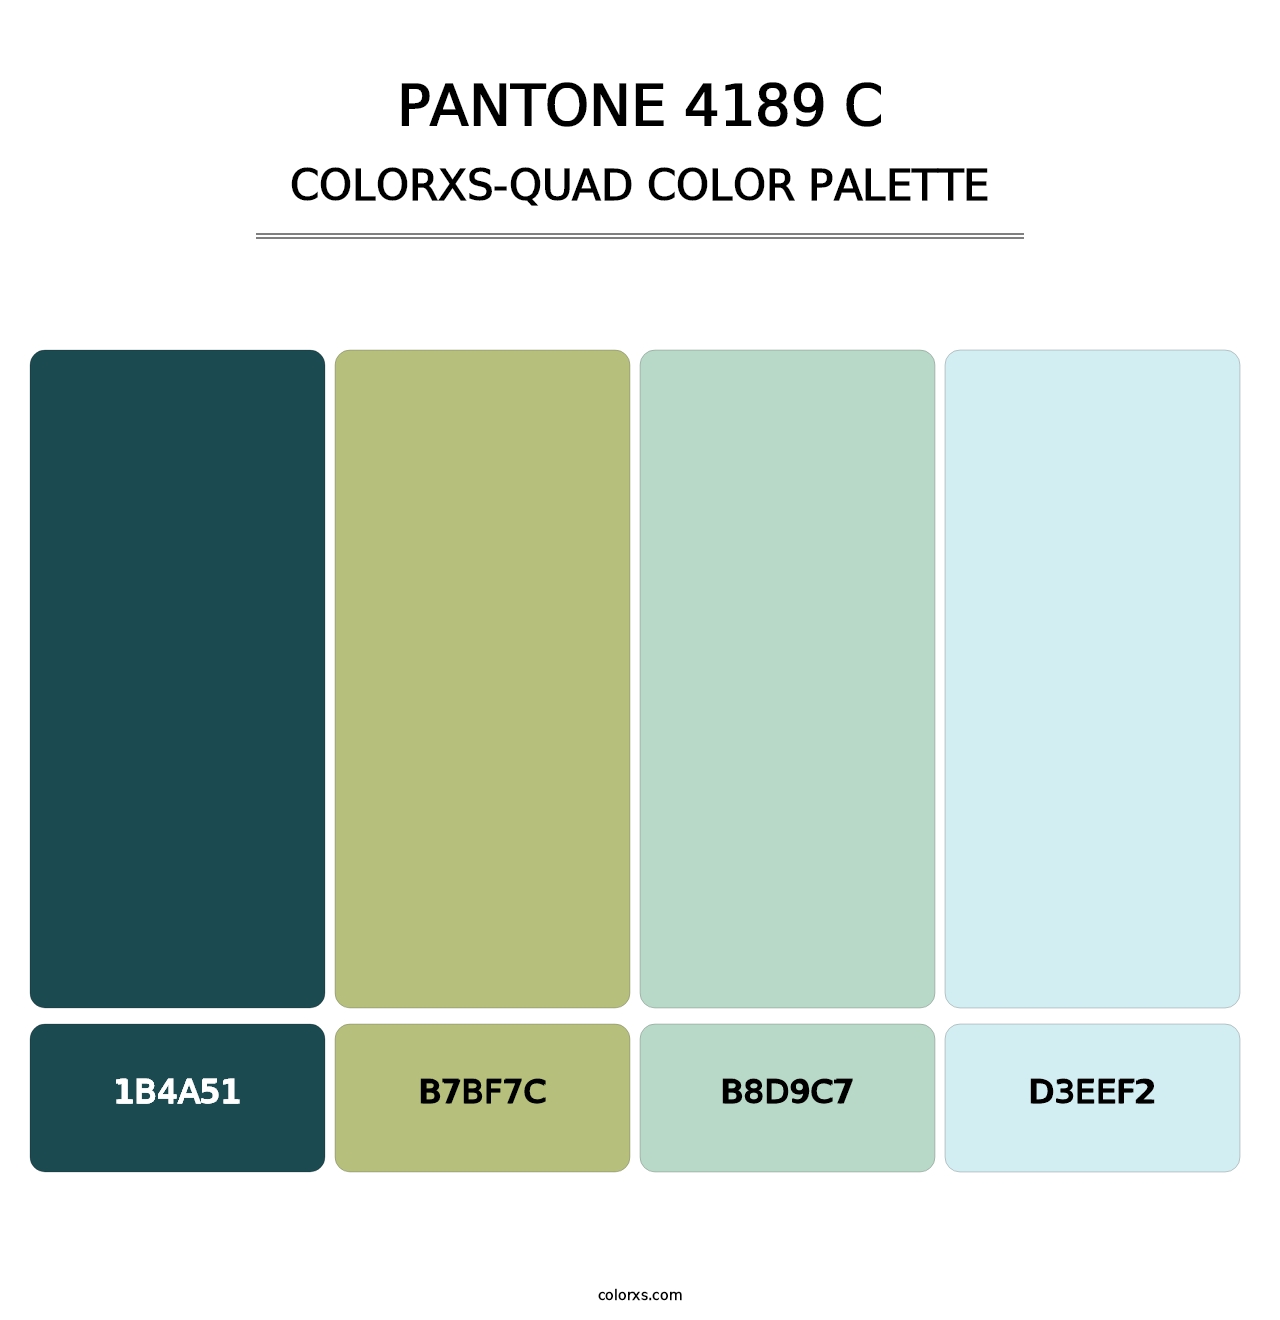 PANTONE 4189 C - Colorxs Quad Palette